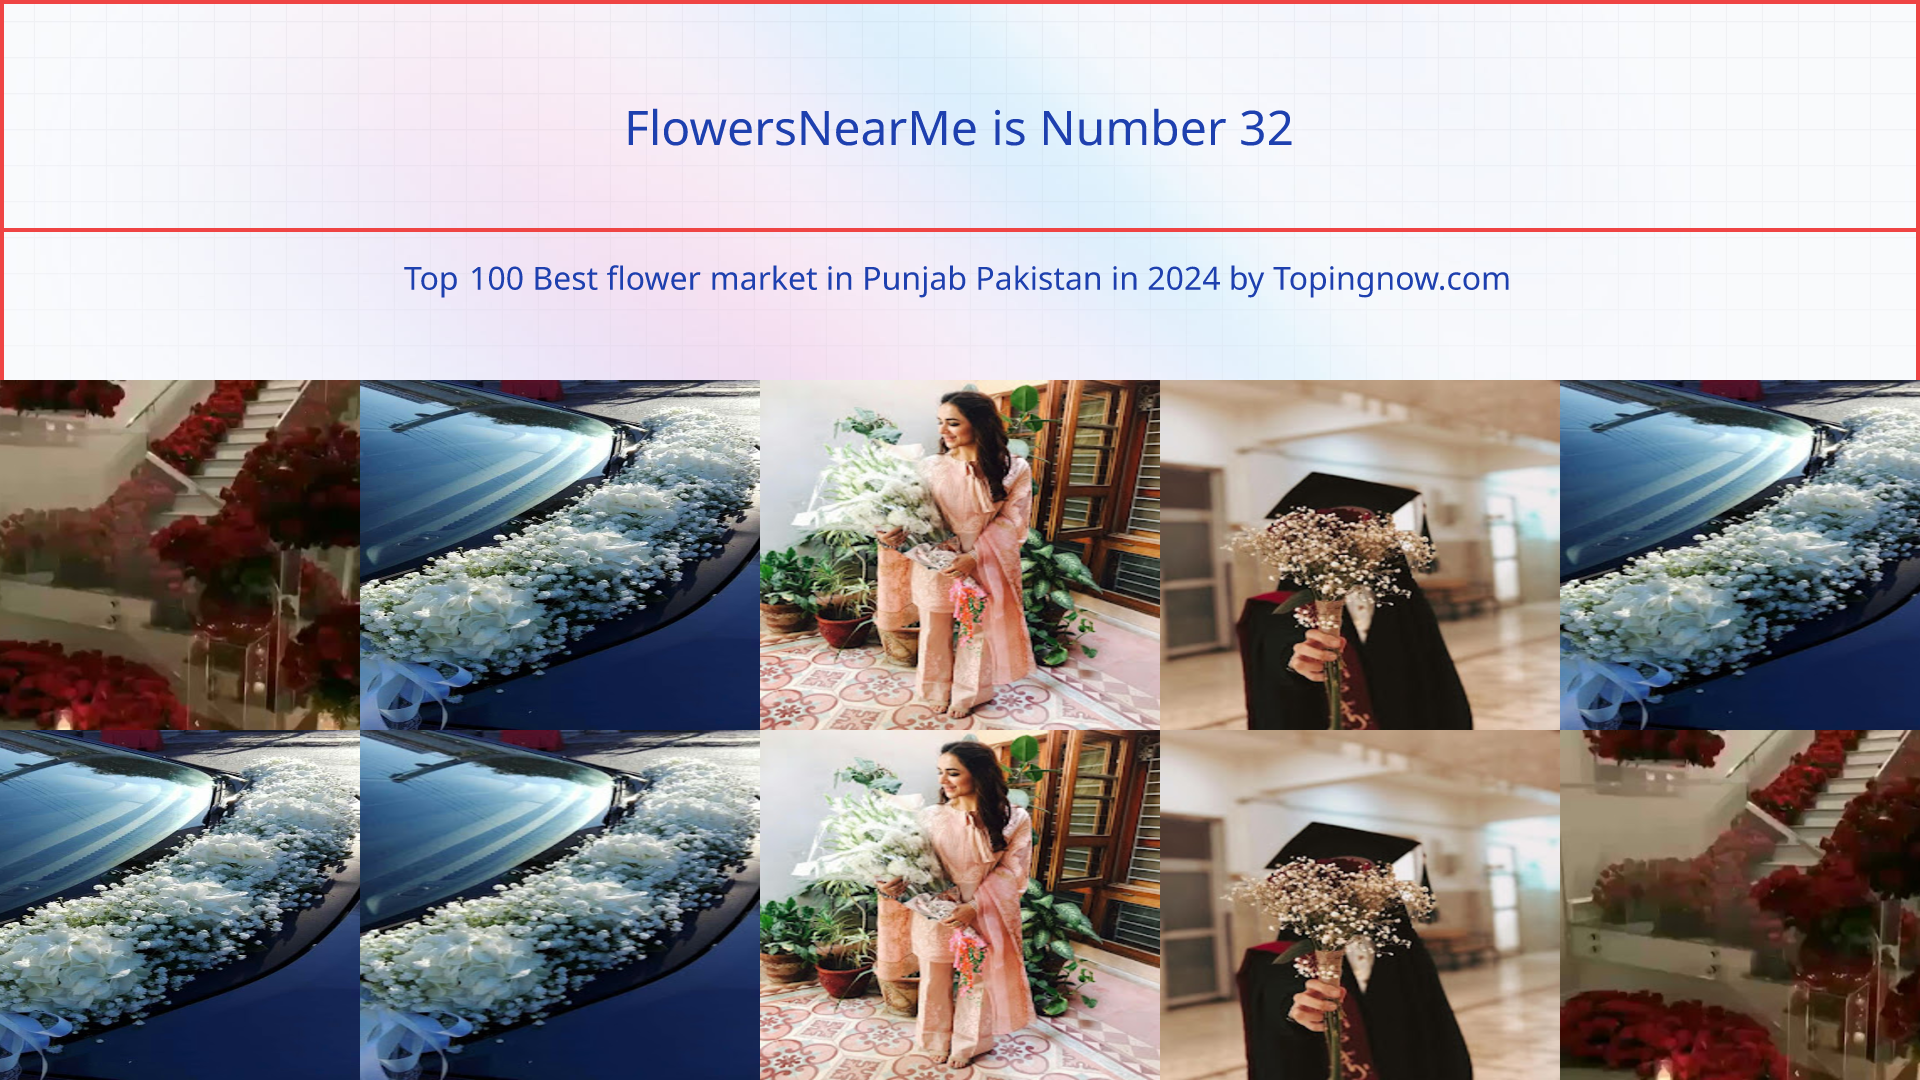 FlowersNearMe: Top 100 Best flower market in Punjab Pakistan in 2024